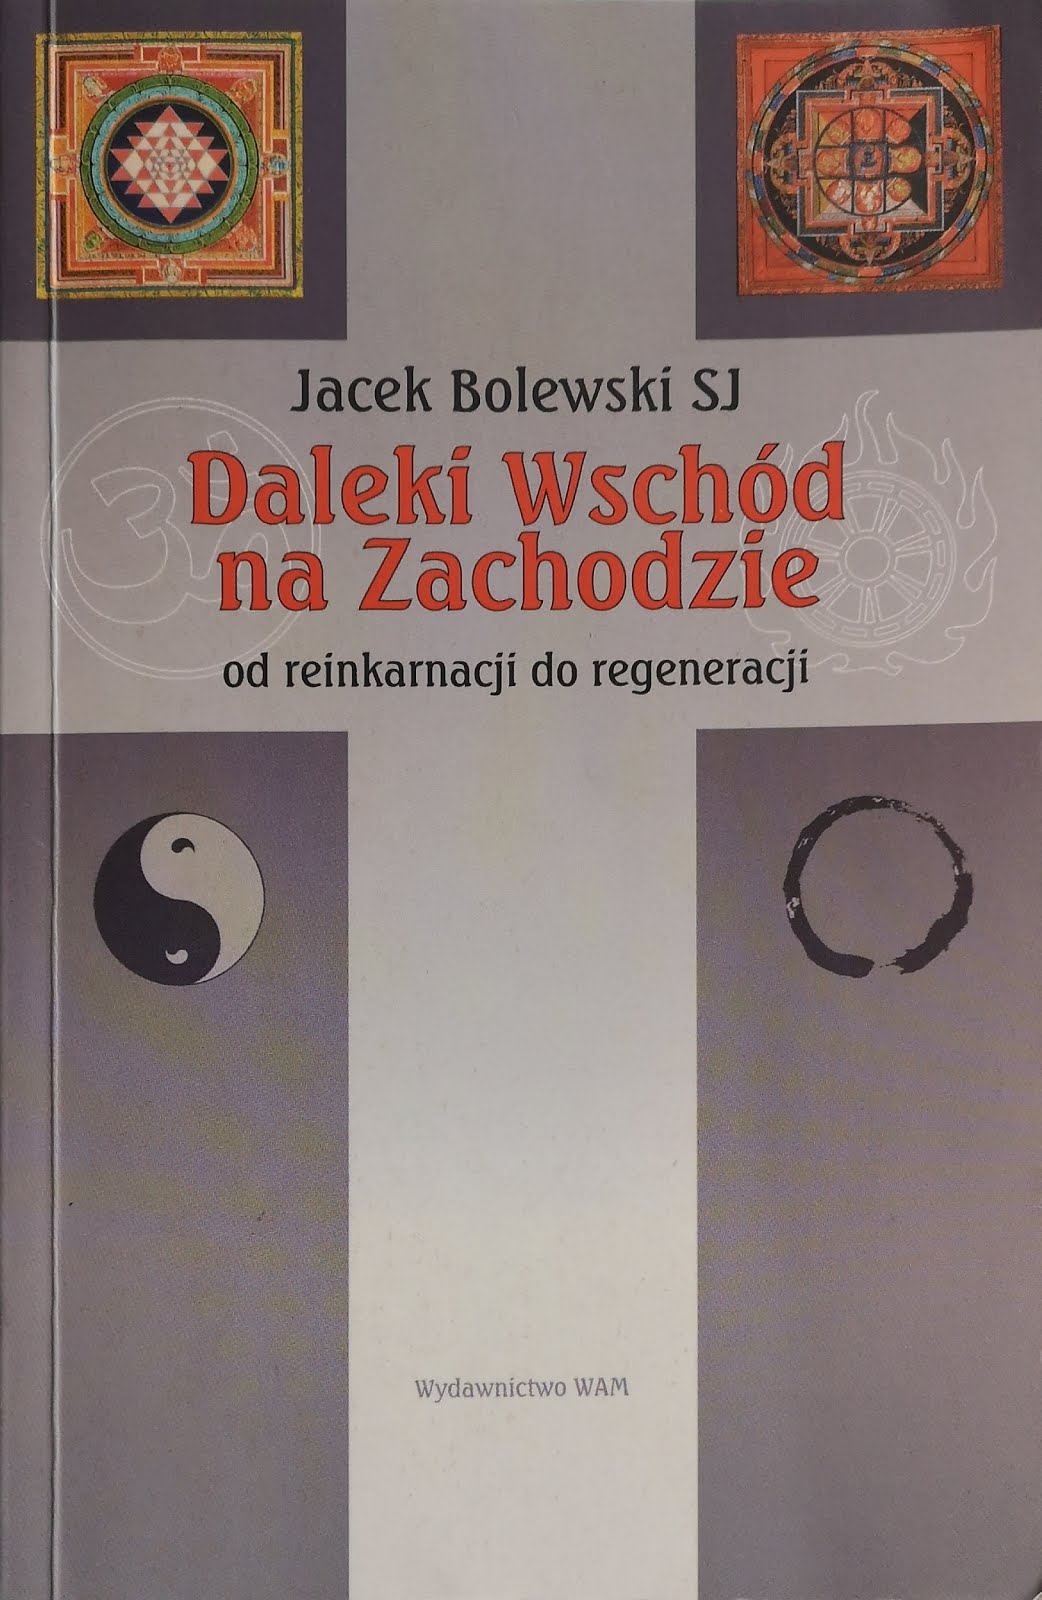 Jacek Bolewski SJ